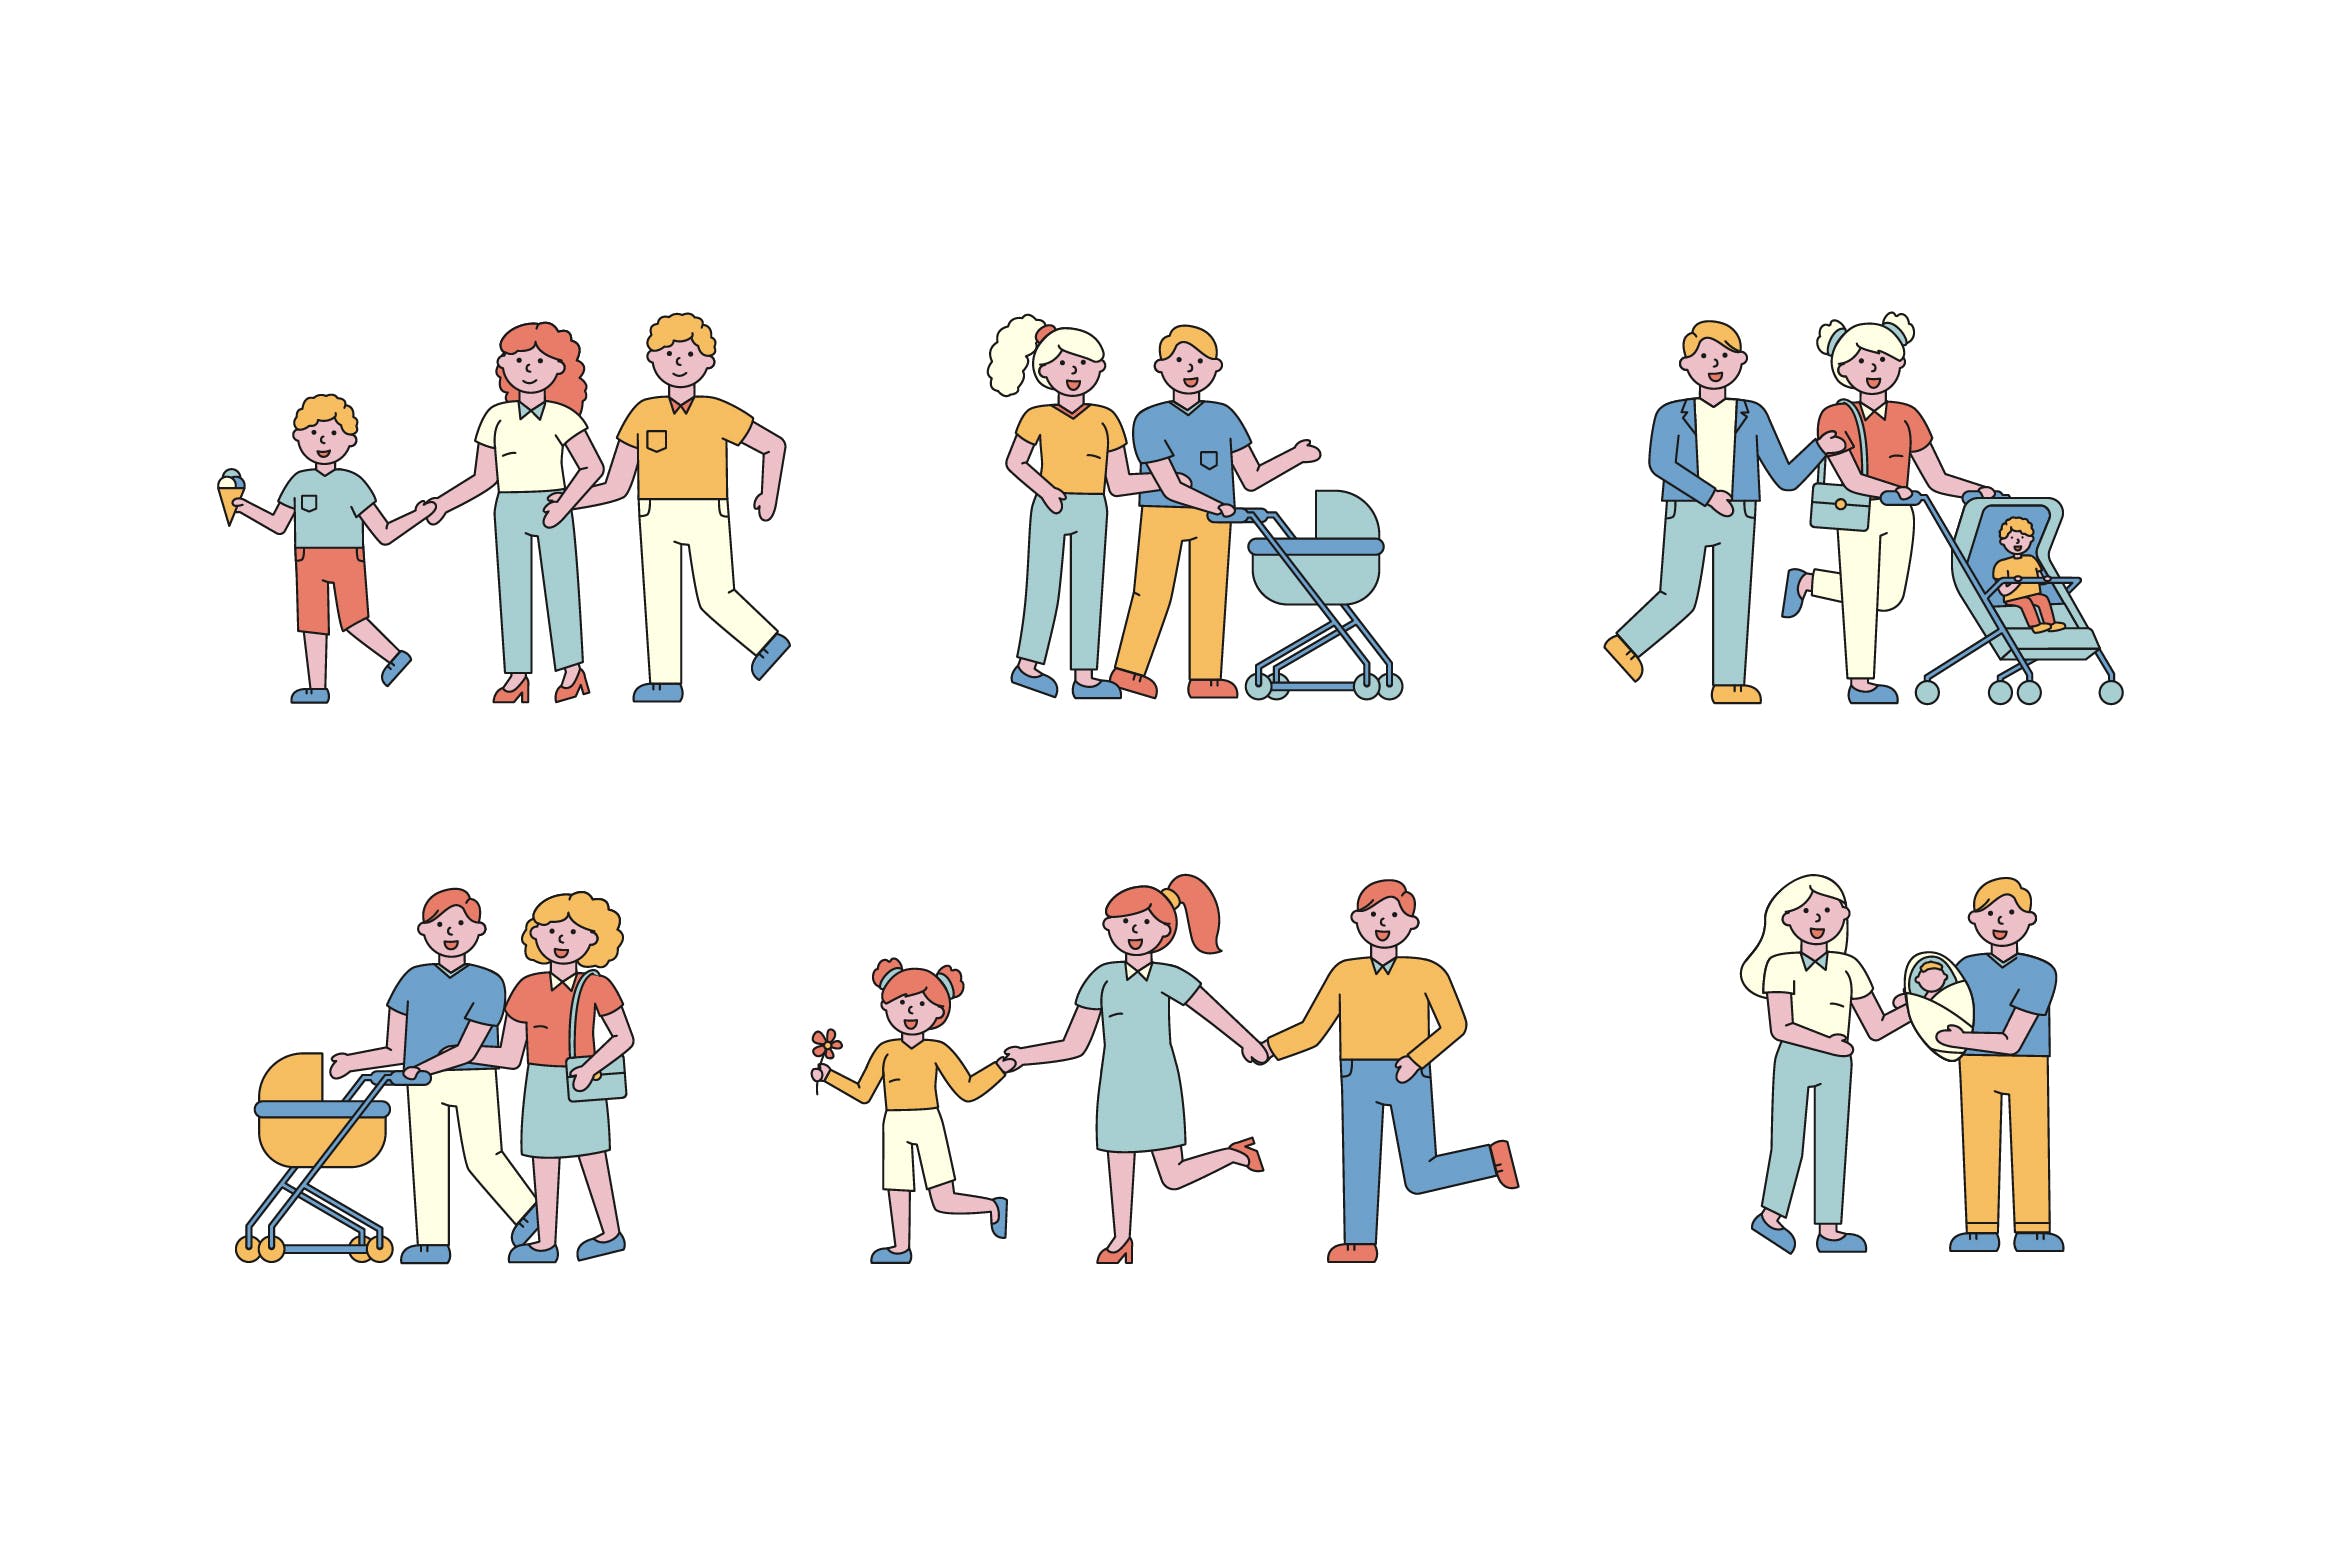 亲子活动主题人物形象线条艺术矢量插画第一素材精选素材 Family Lineart People Character Collection插图